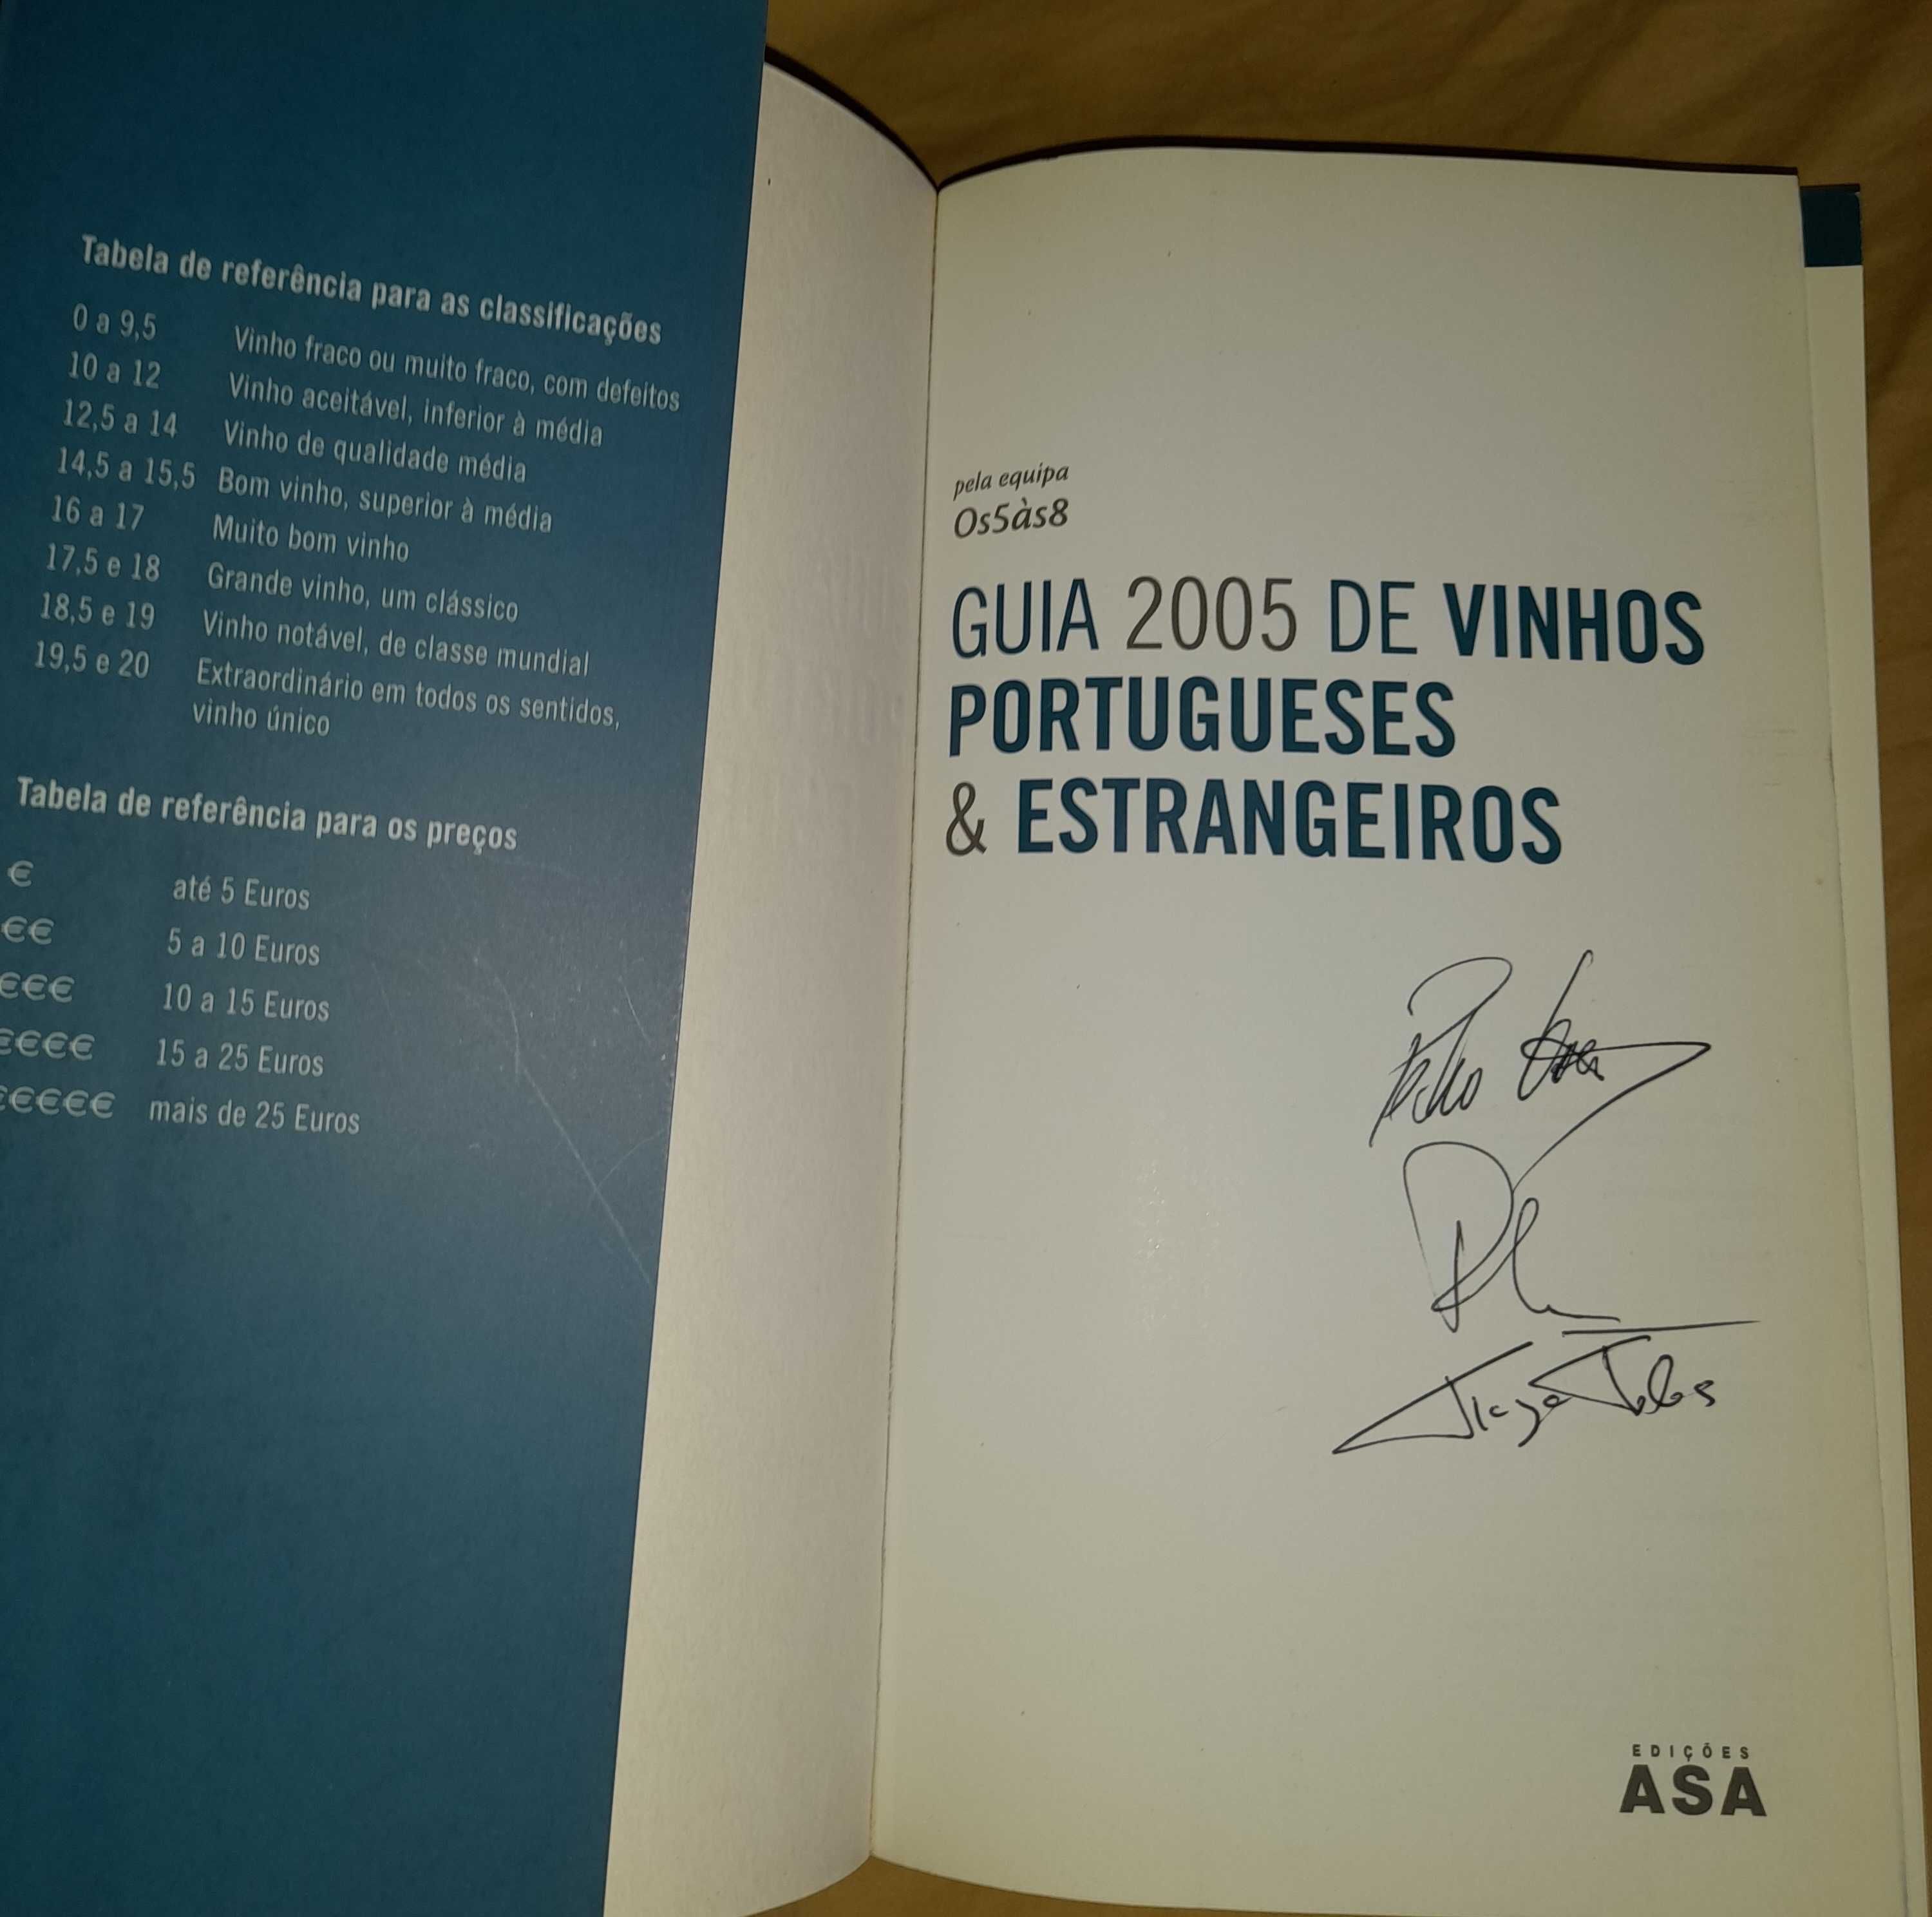 Guia 2005 vinhos Portugueses e estrangeiros